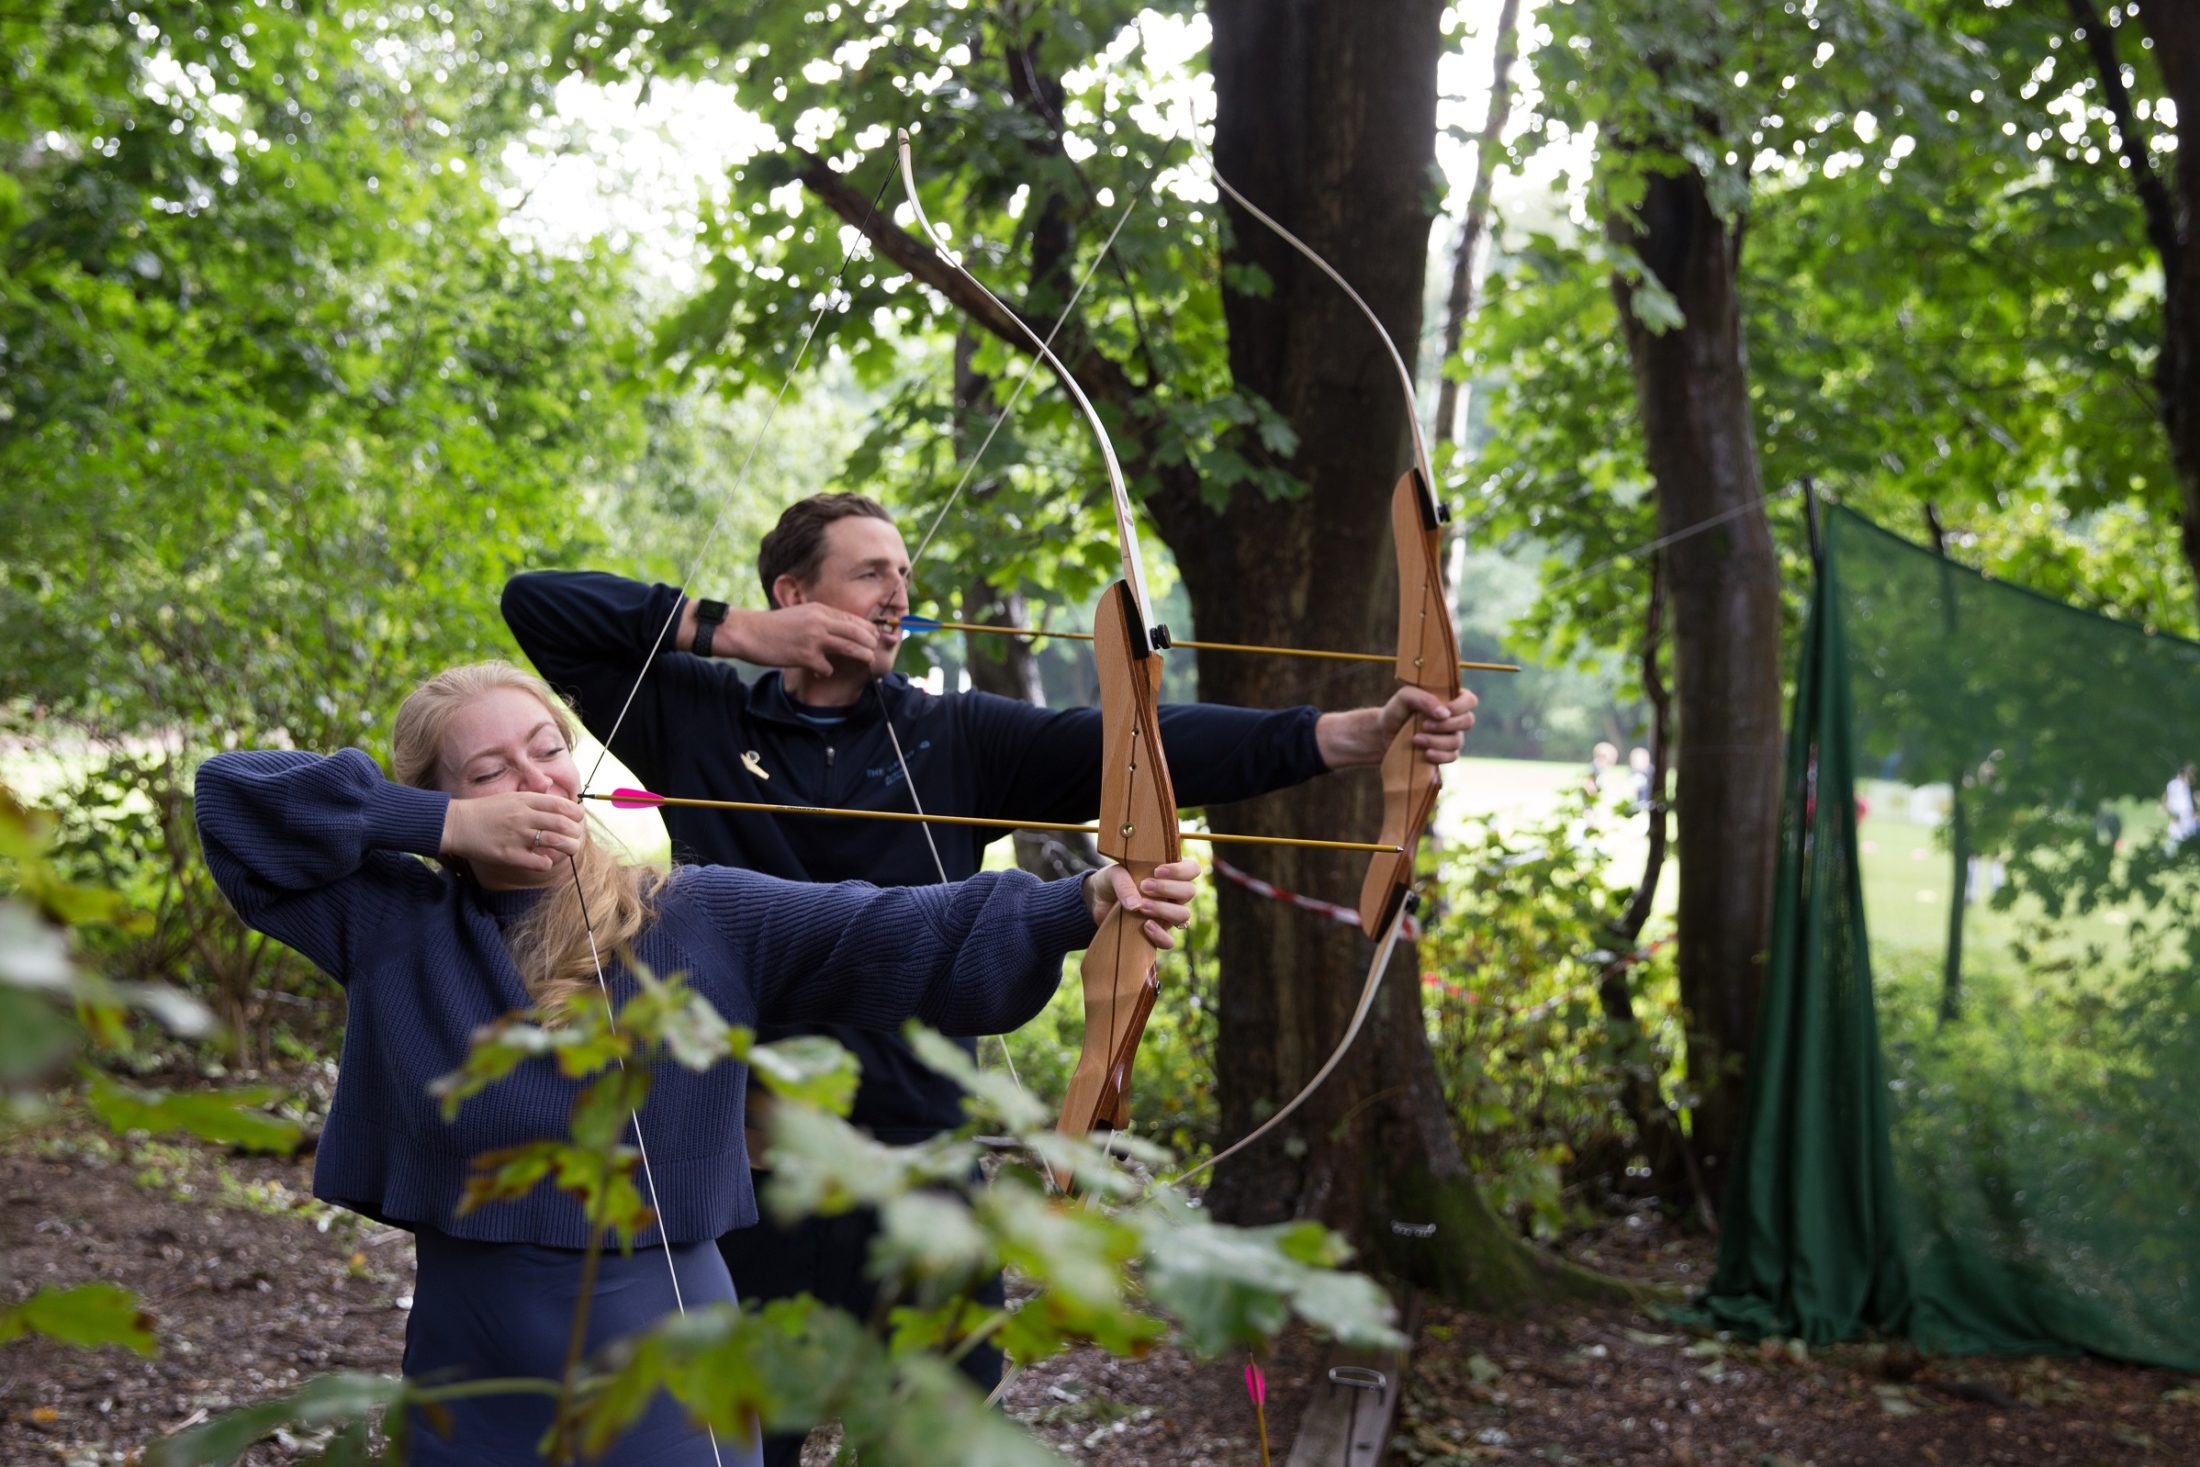 Archery_Activities_Sept 20-5